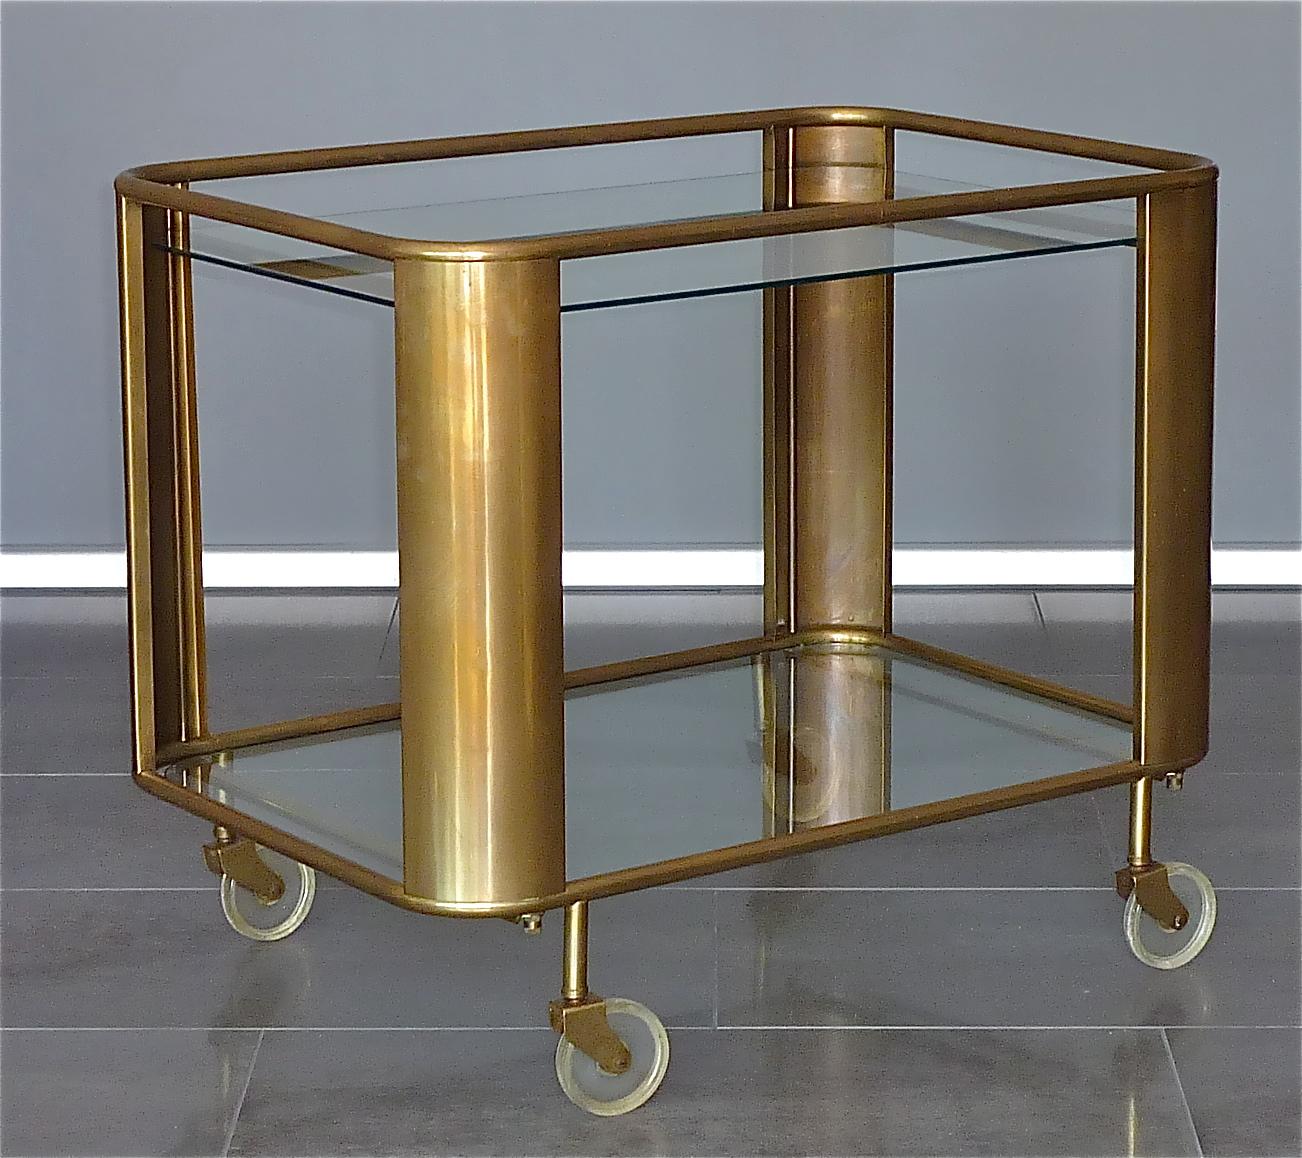 Patinated Bauhaus Art Deco Streamline Serving Trolley Bar Cart Brass Glass Lucite 1930 50s